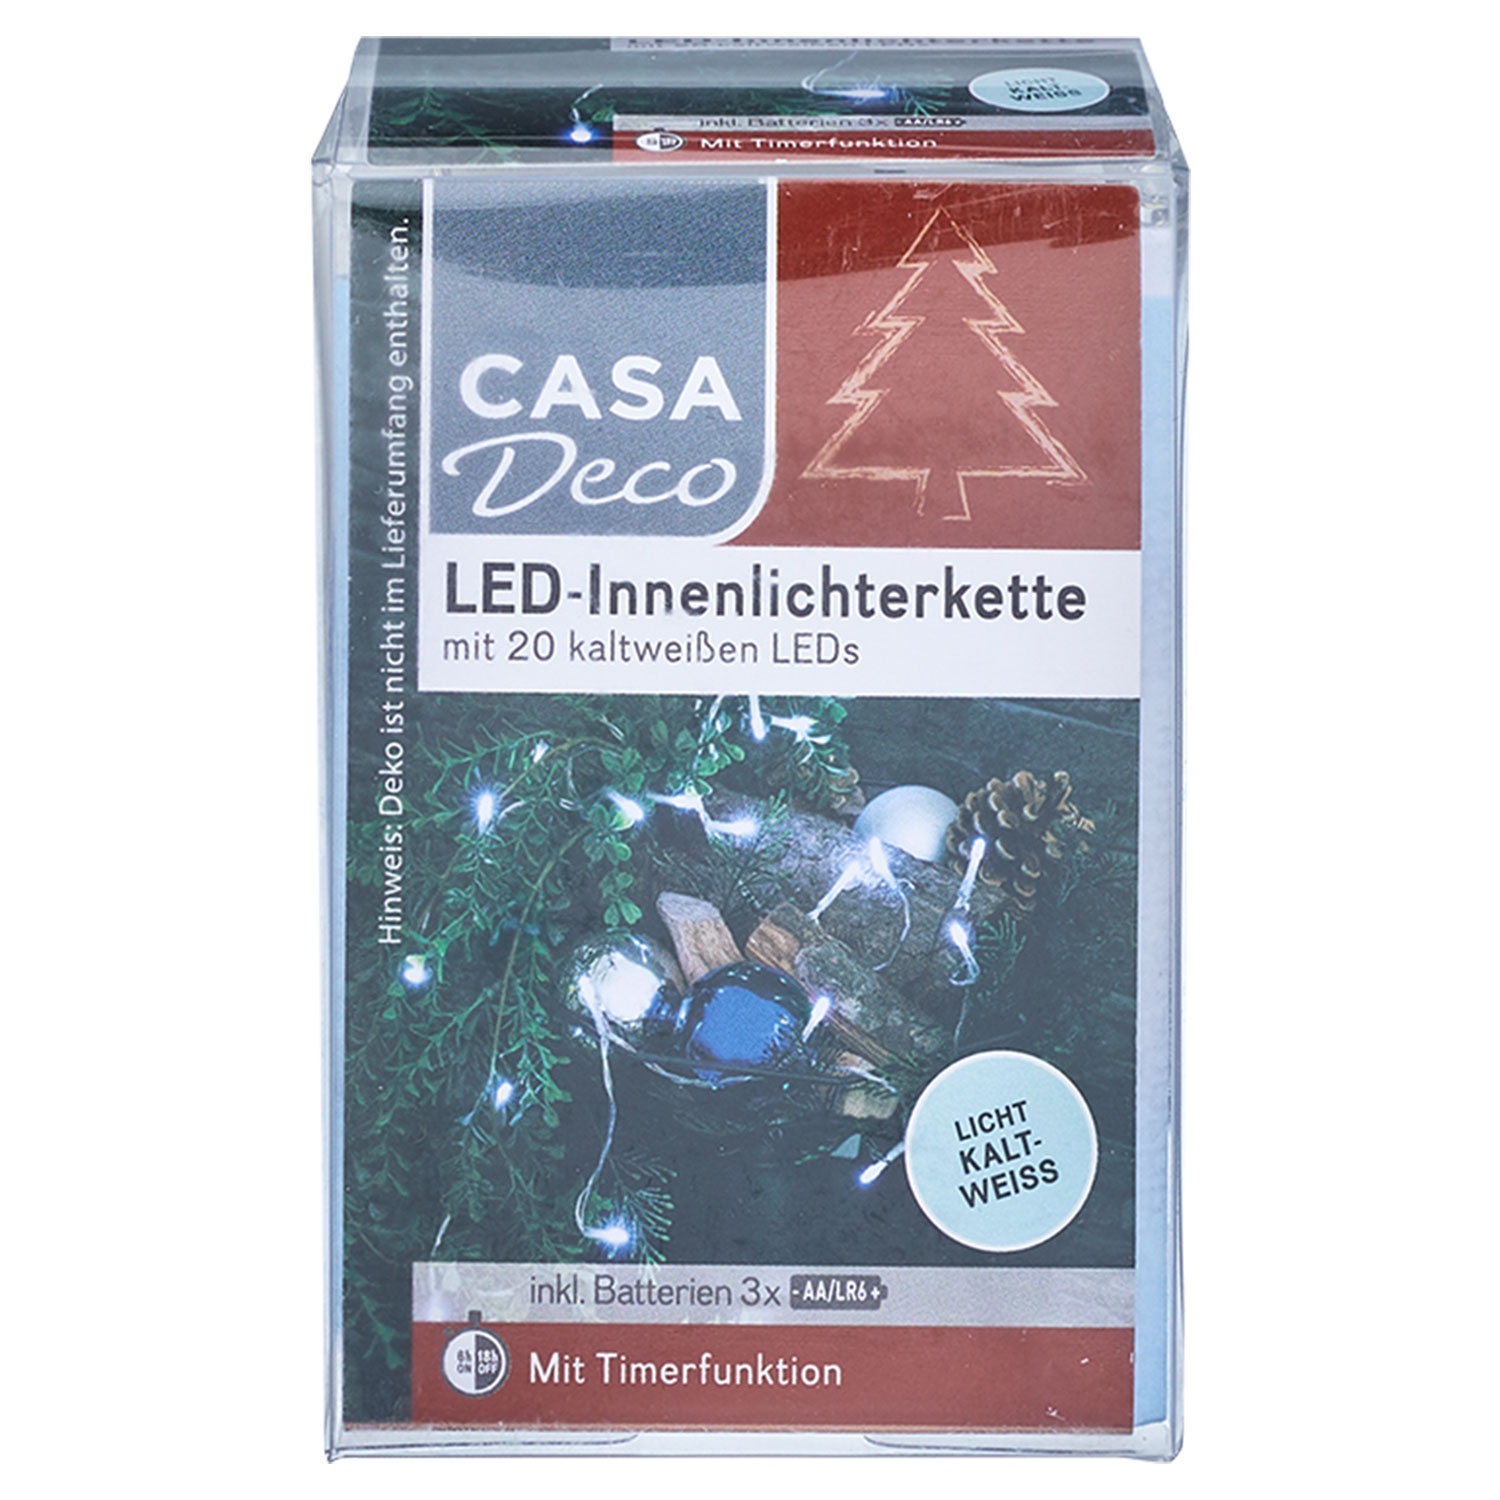 CASA DECO LED-Innenlichterkette